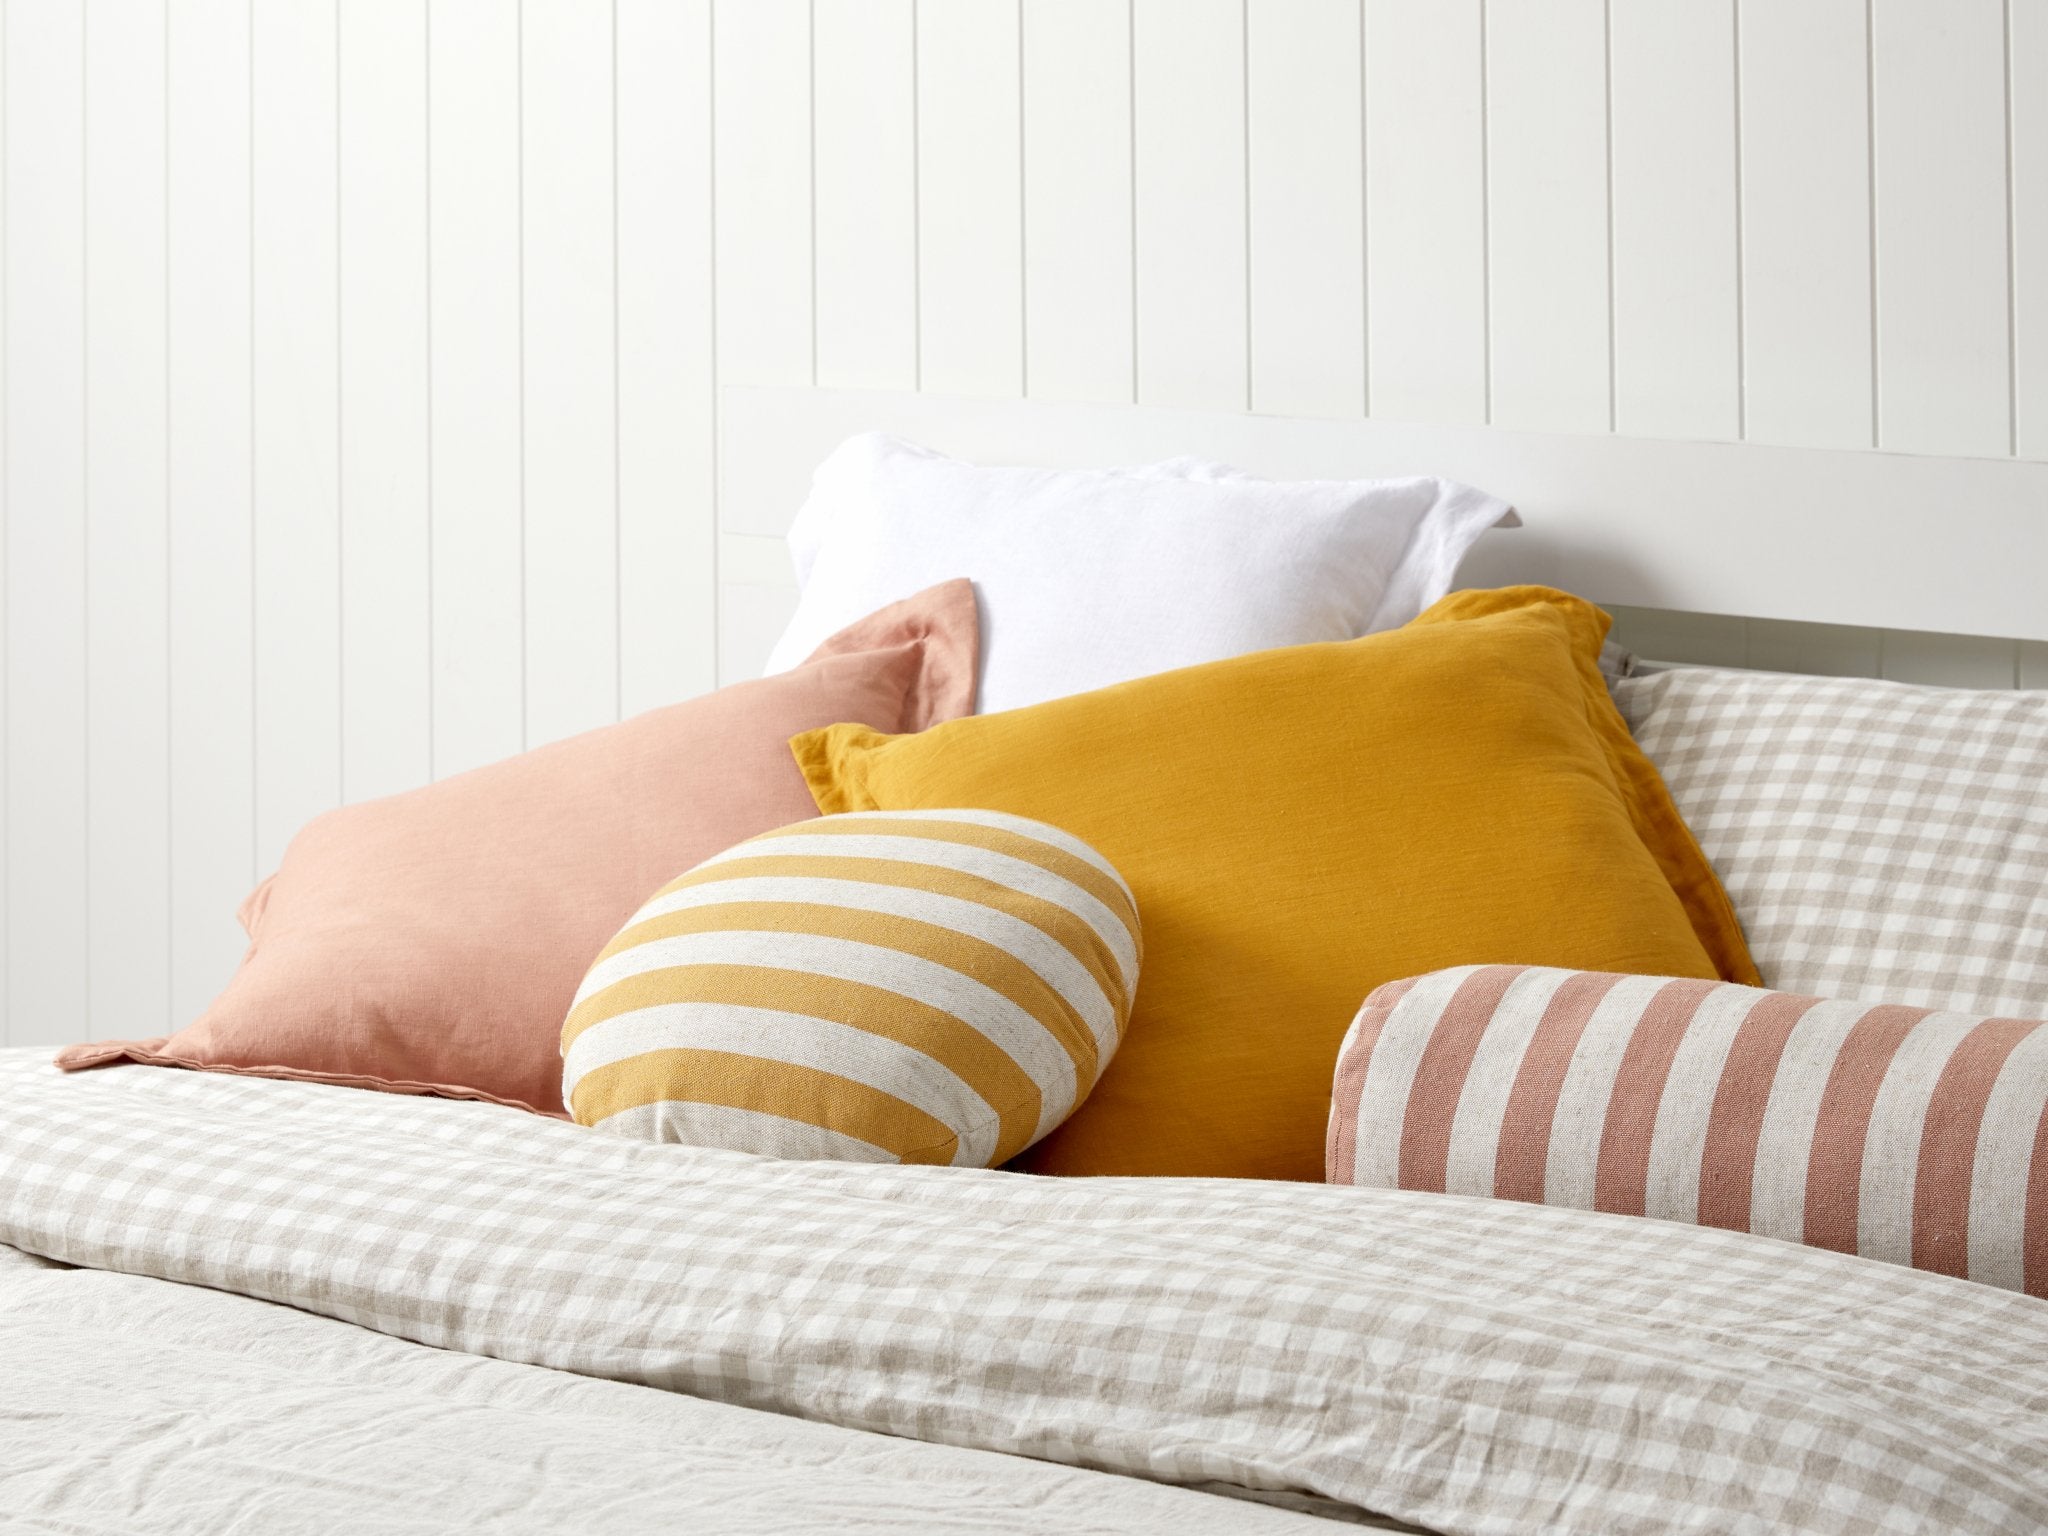 Mocka - Bed and pillows